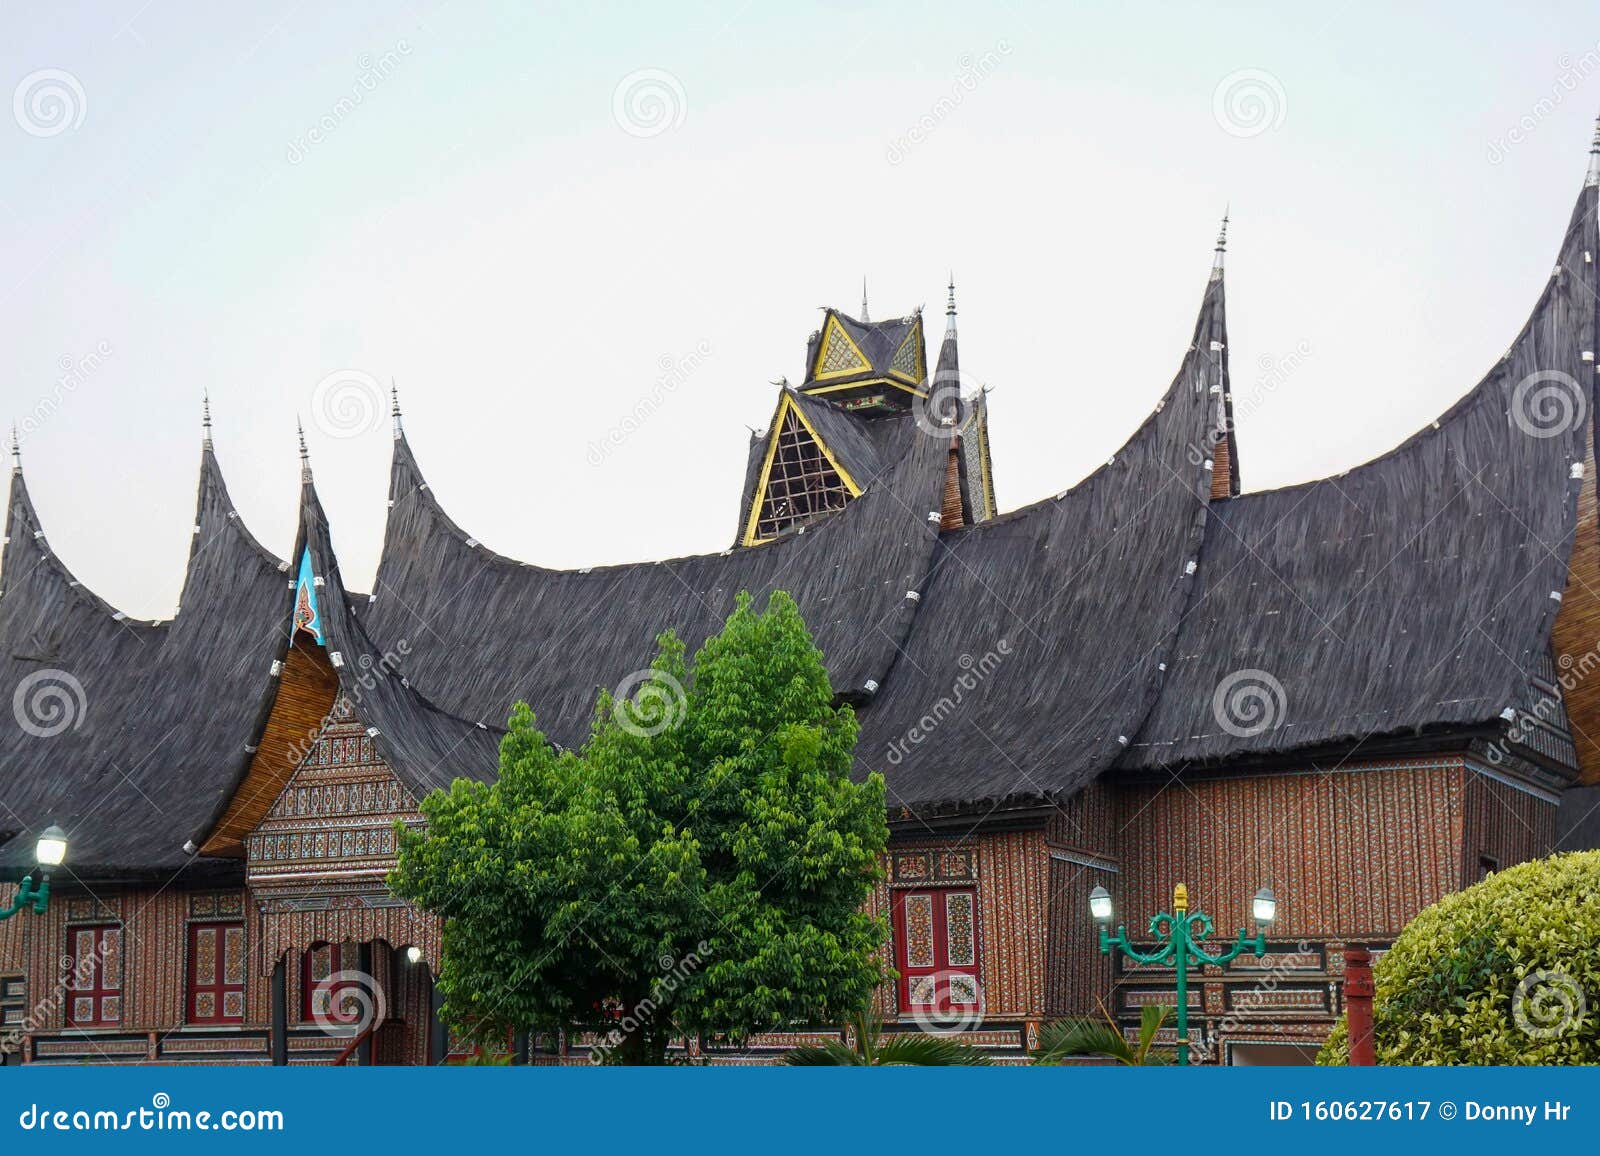 rumah gadang traditional house, adat suku minangkabau